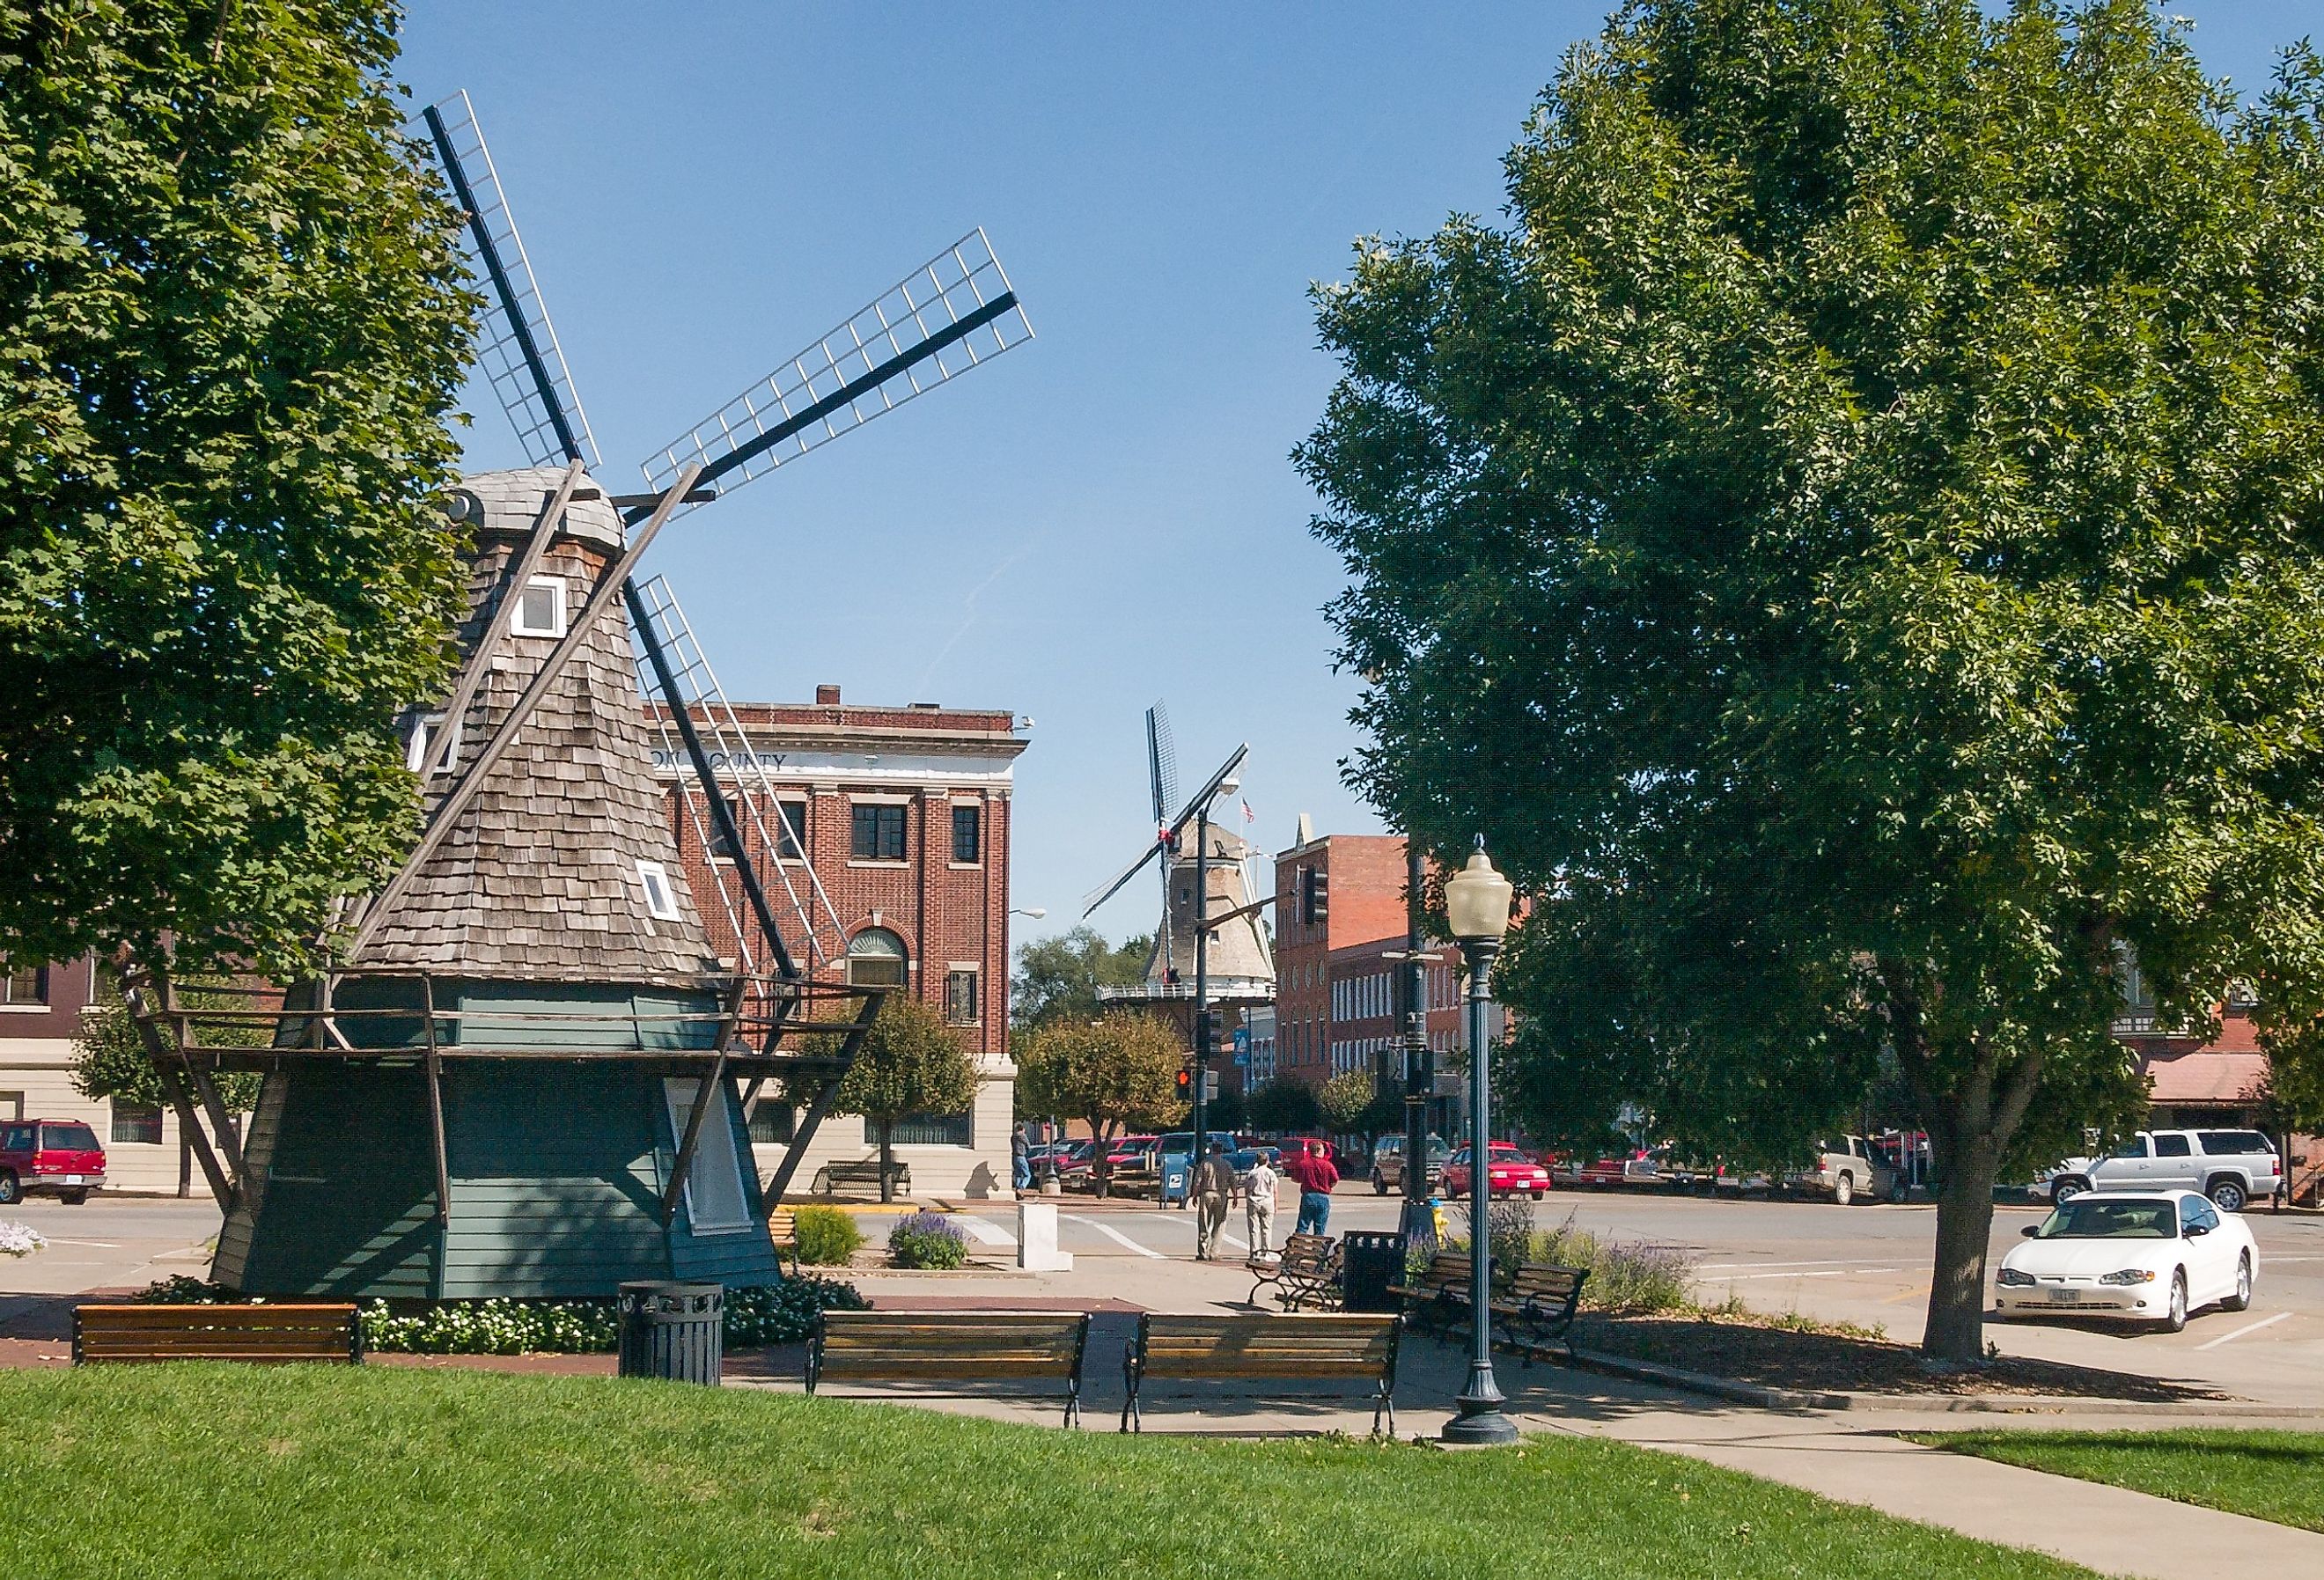 Windmill at Dutch village Pella, Iowa.